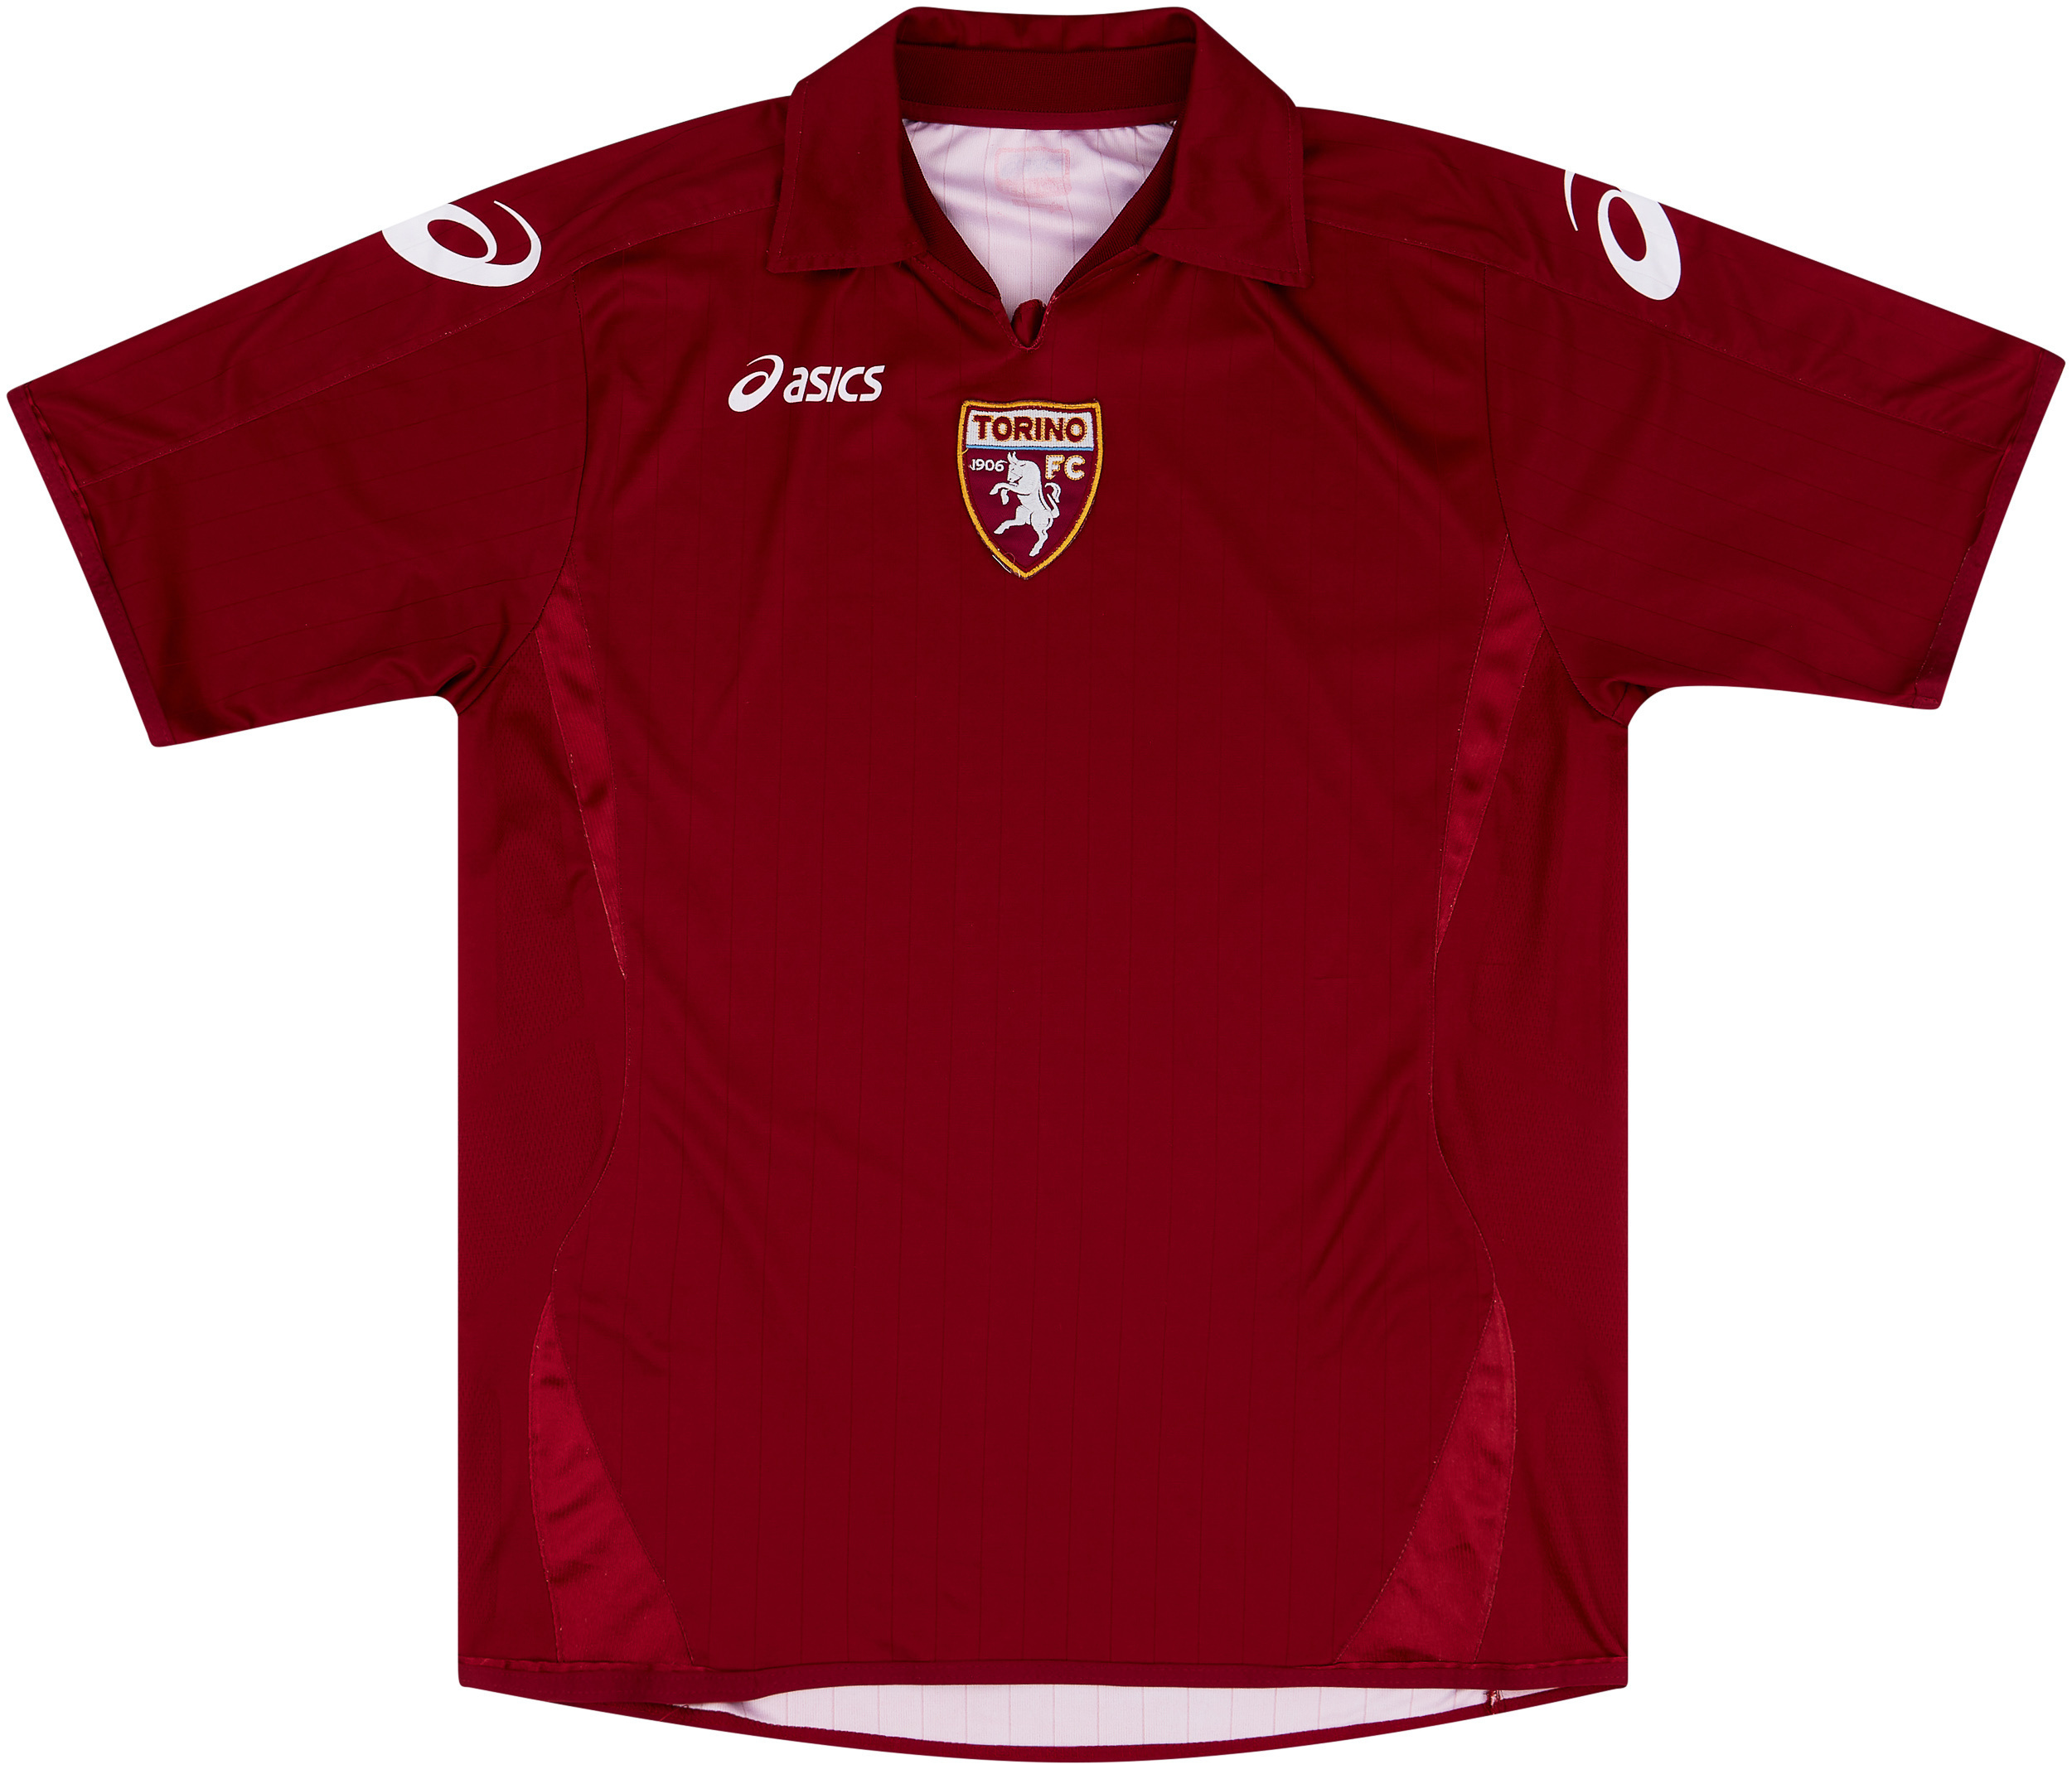 Torino  home shirt (Original)